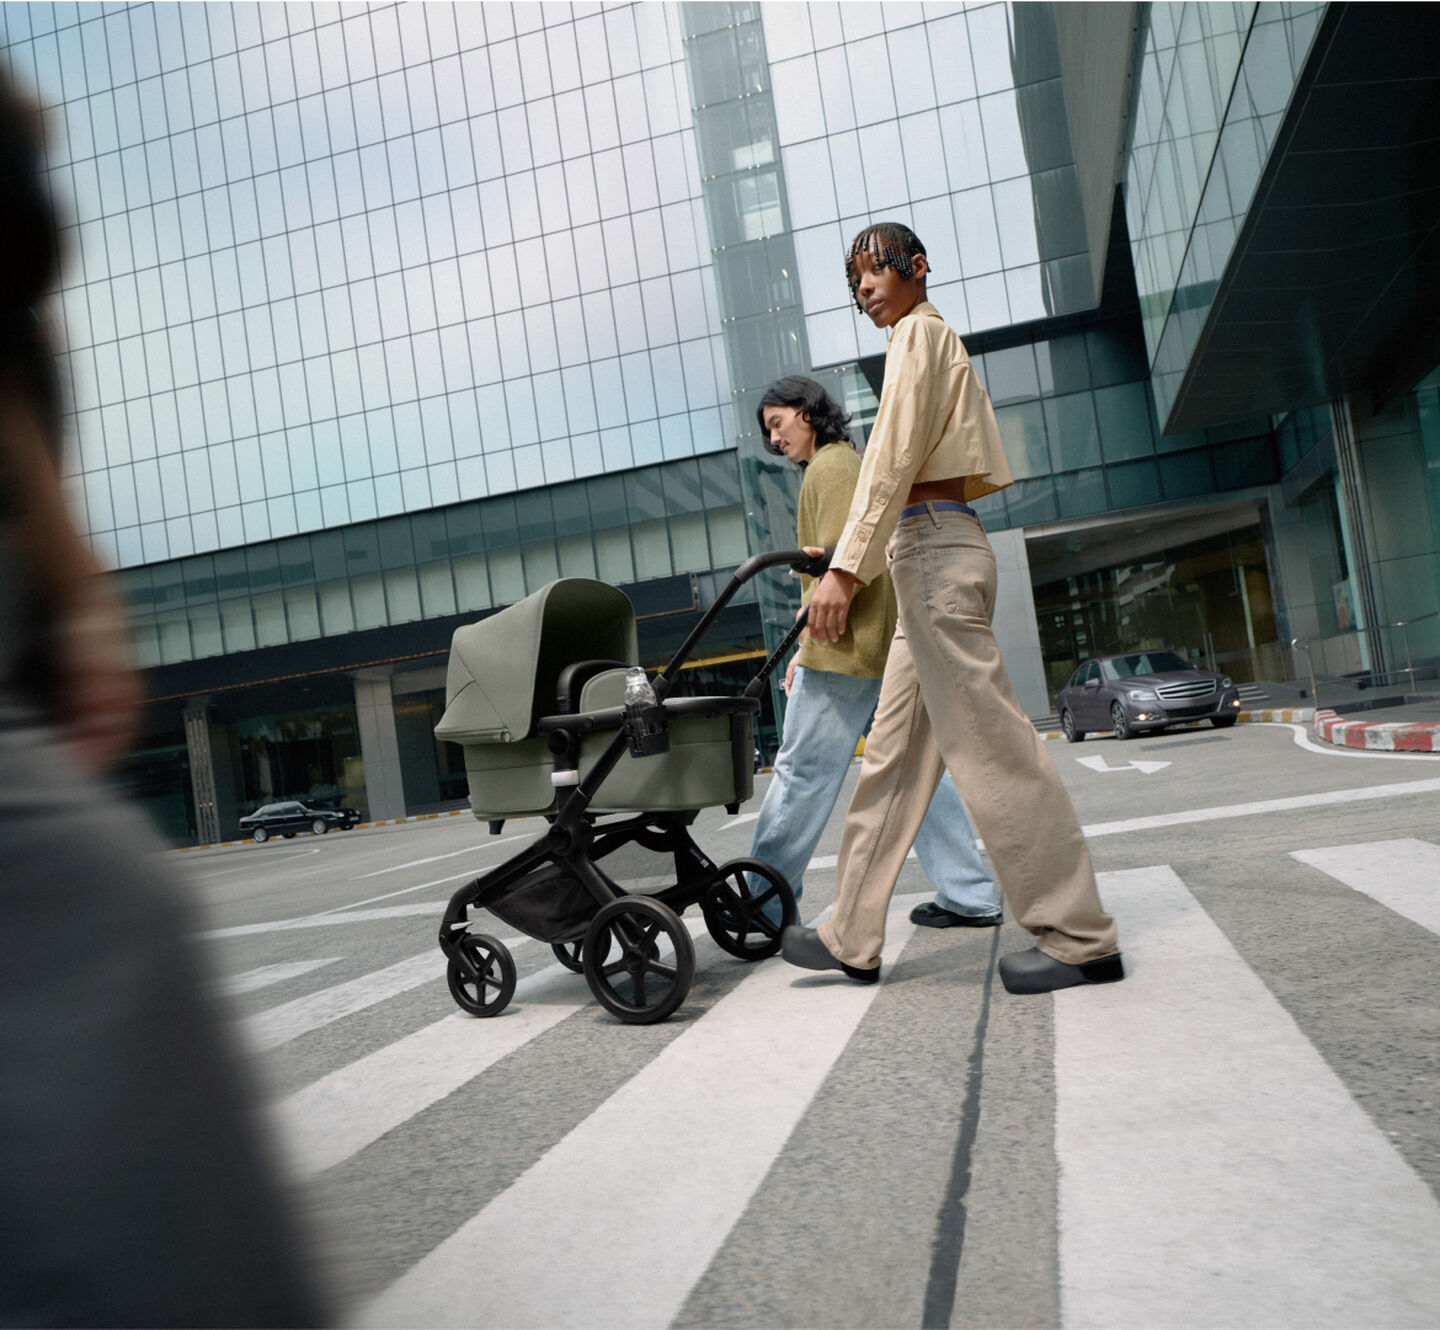 Una pareja moderna y elegante pasea con seguridad con su recién nacido en un carrito Bugaboo Fox 5. Están rodeados por rascacielos de cristal.